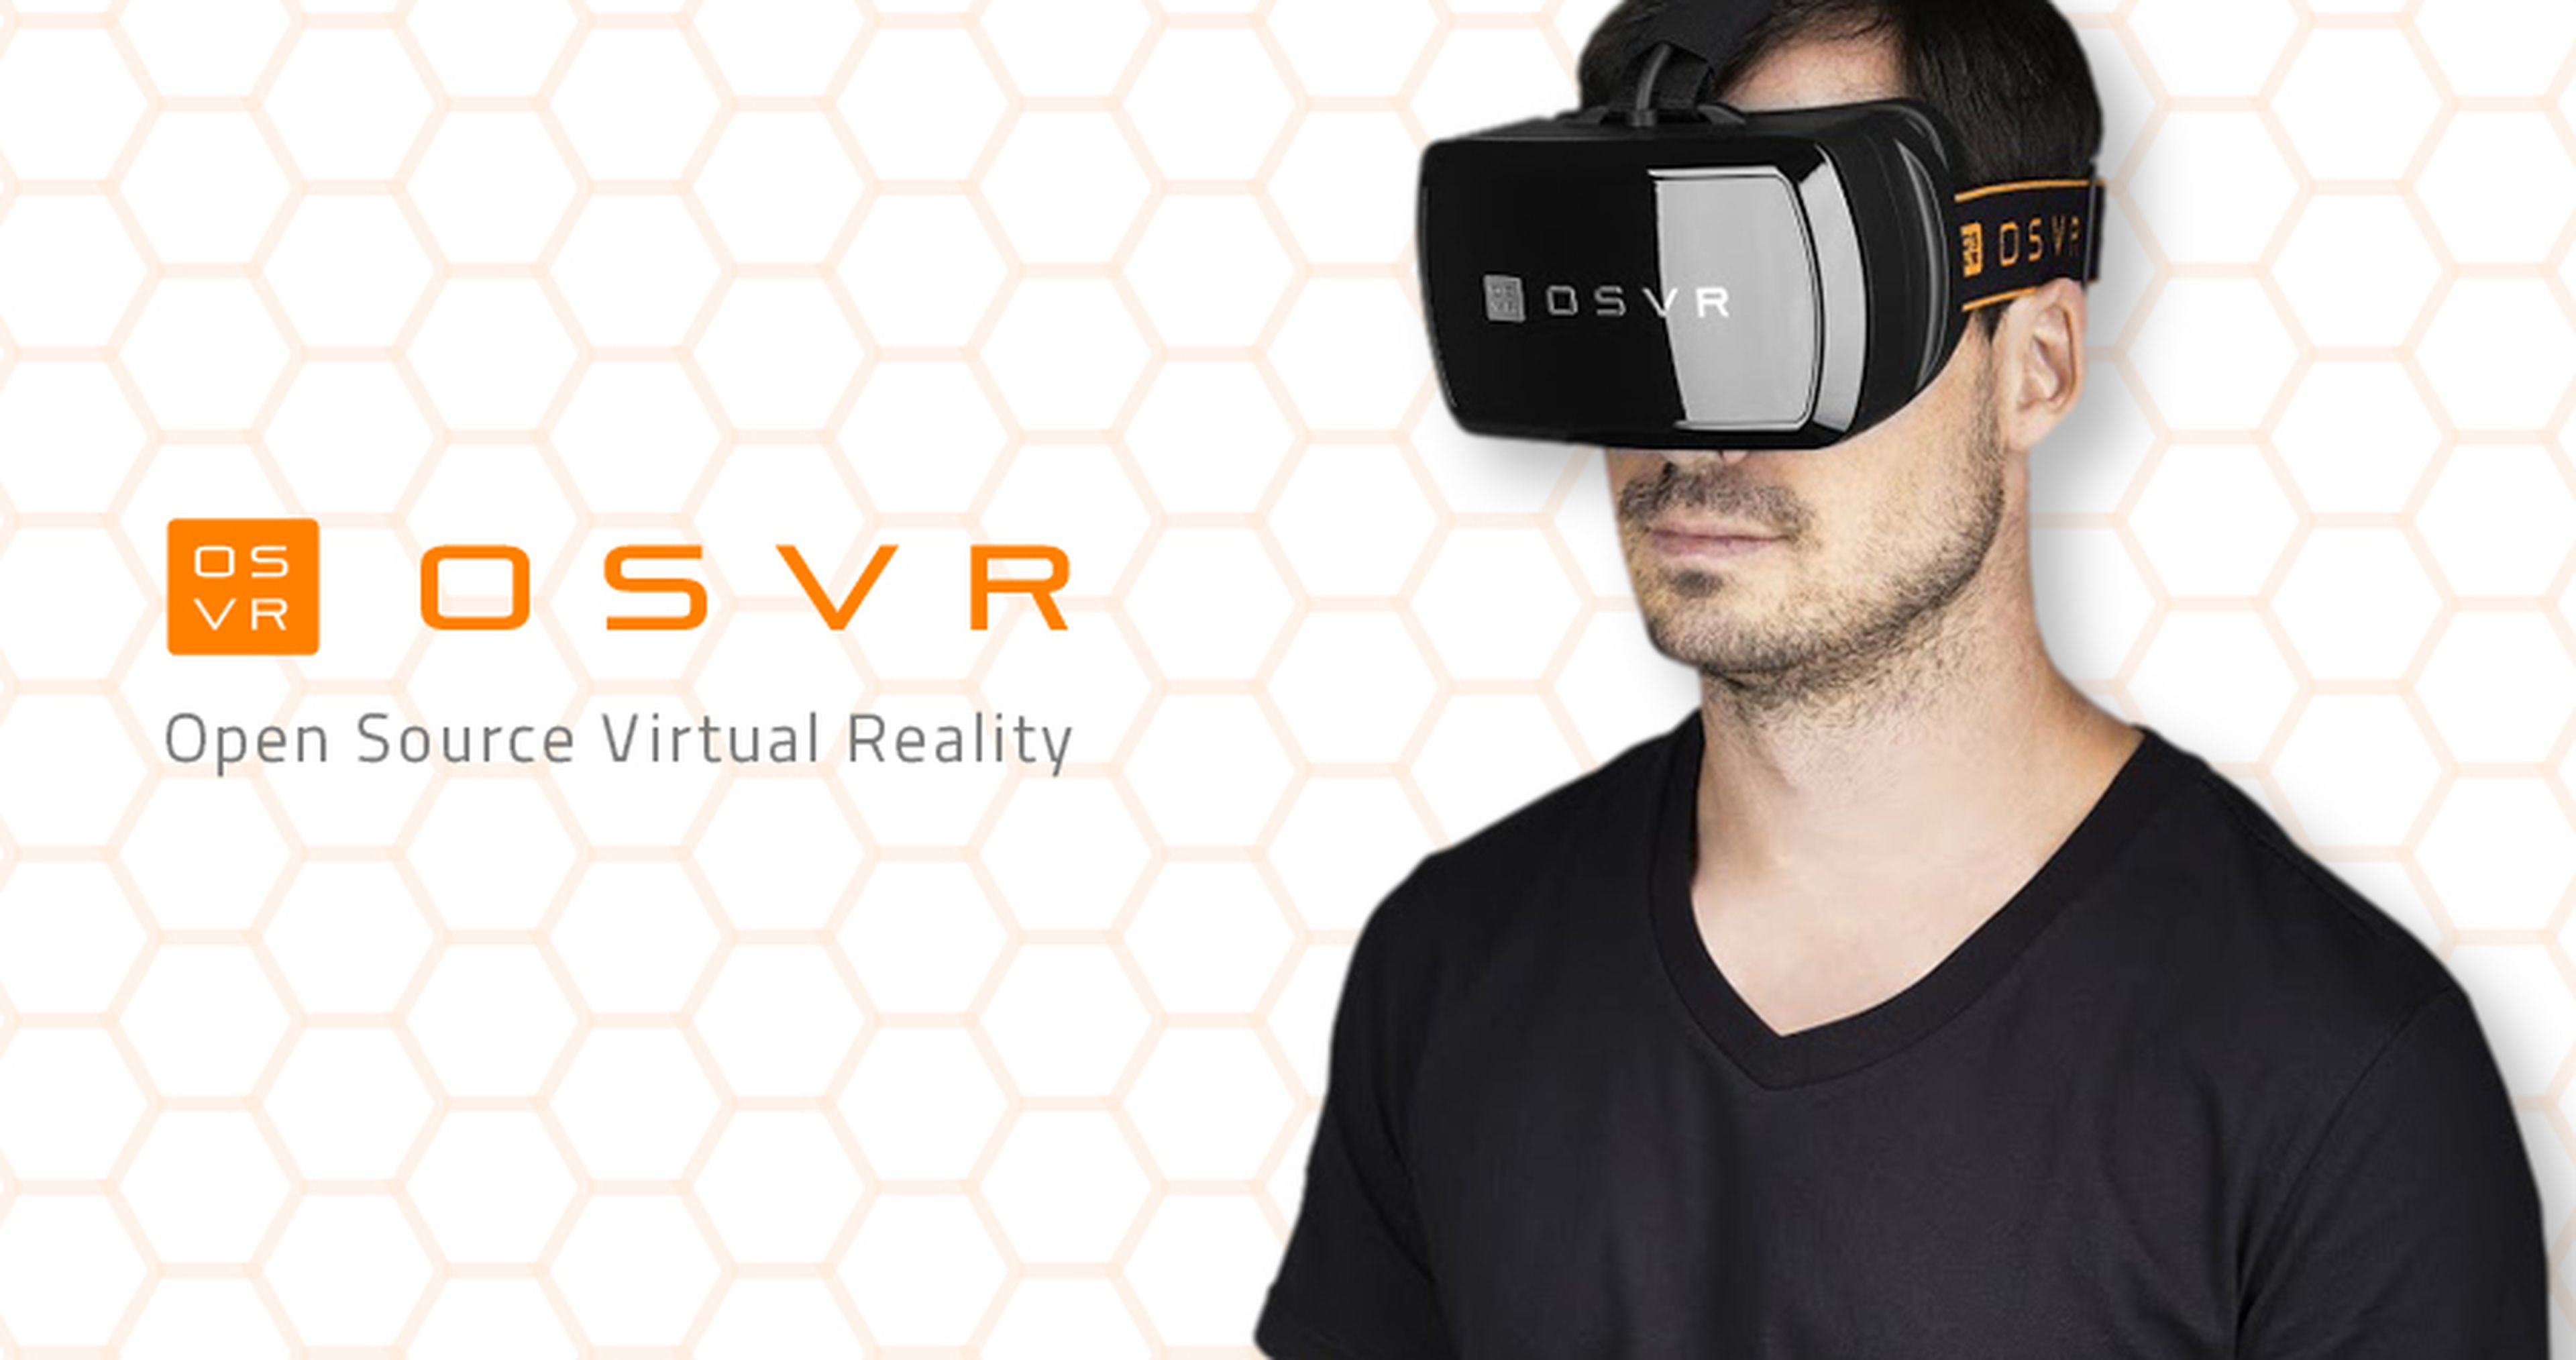 OSVR, ya se pueden comprar las primeras gafas VR Open Source